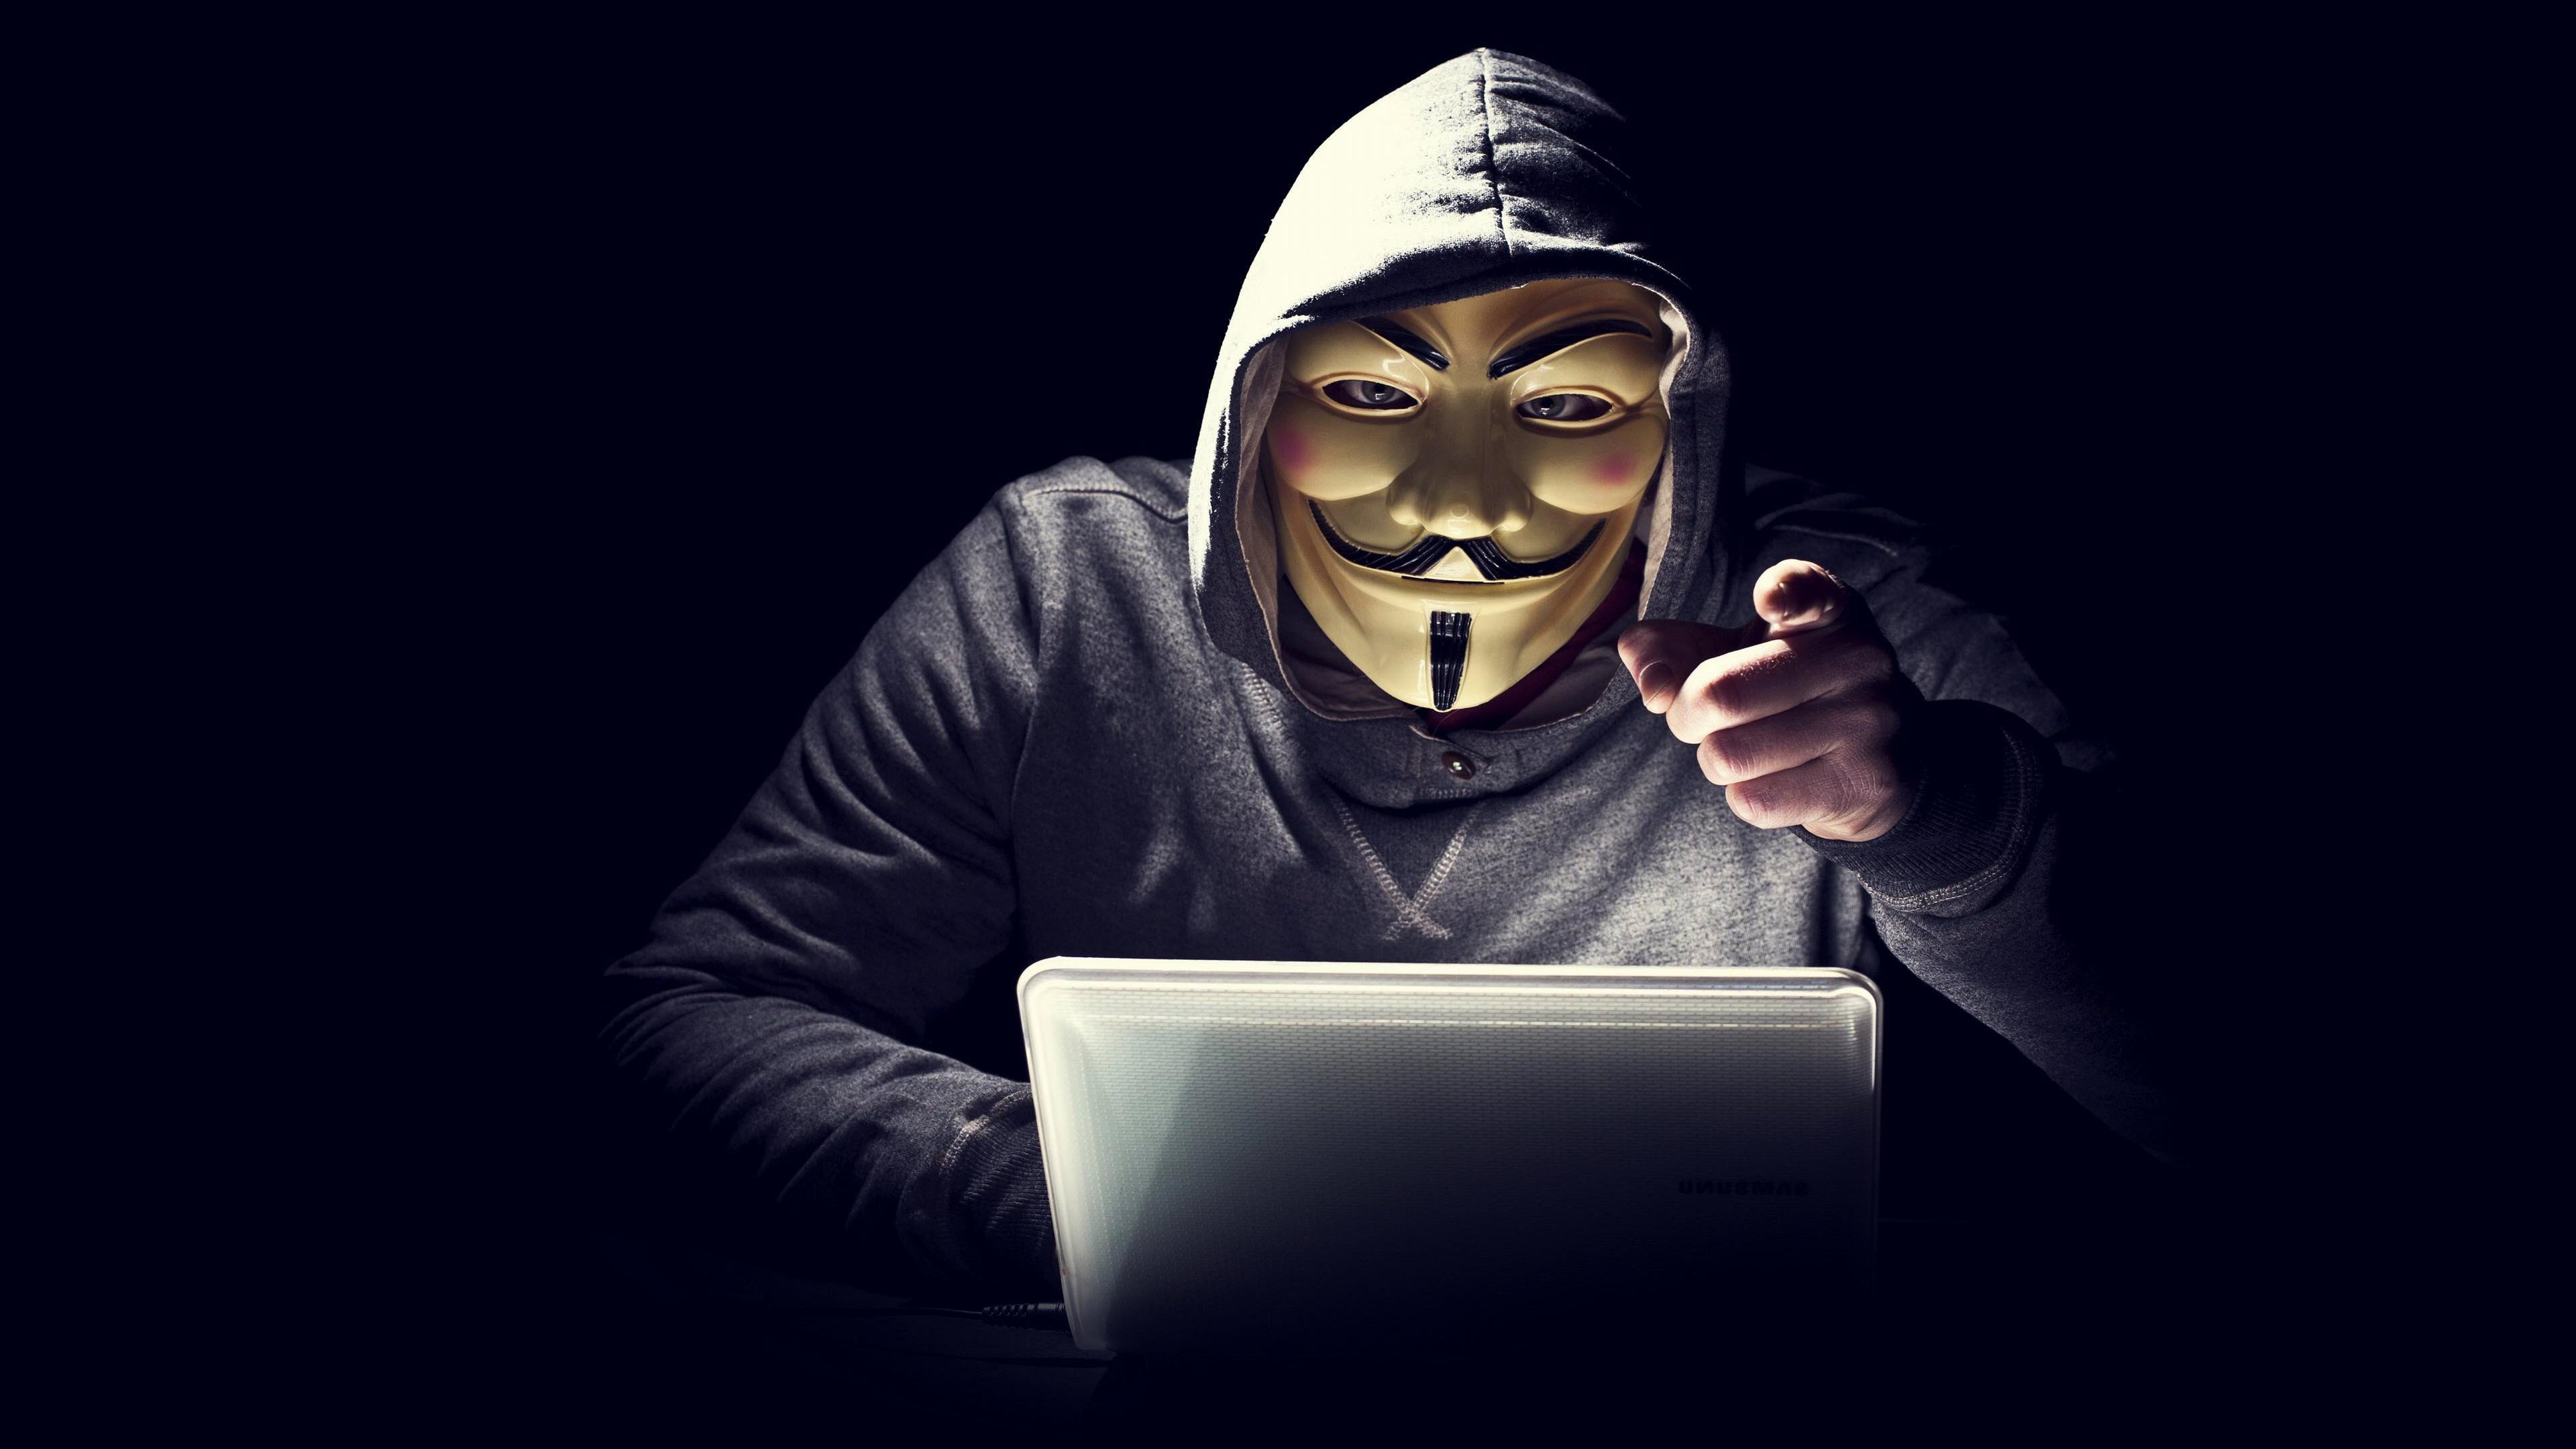 Công khai hướng dẫn hack tài khoản, trang mạng để trộm ảnh nóng